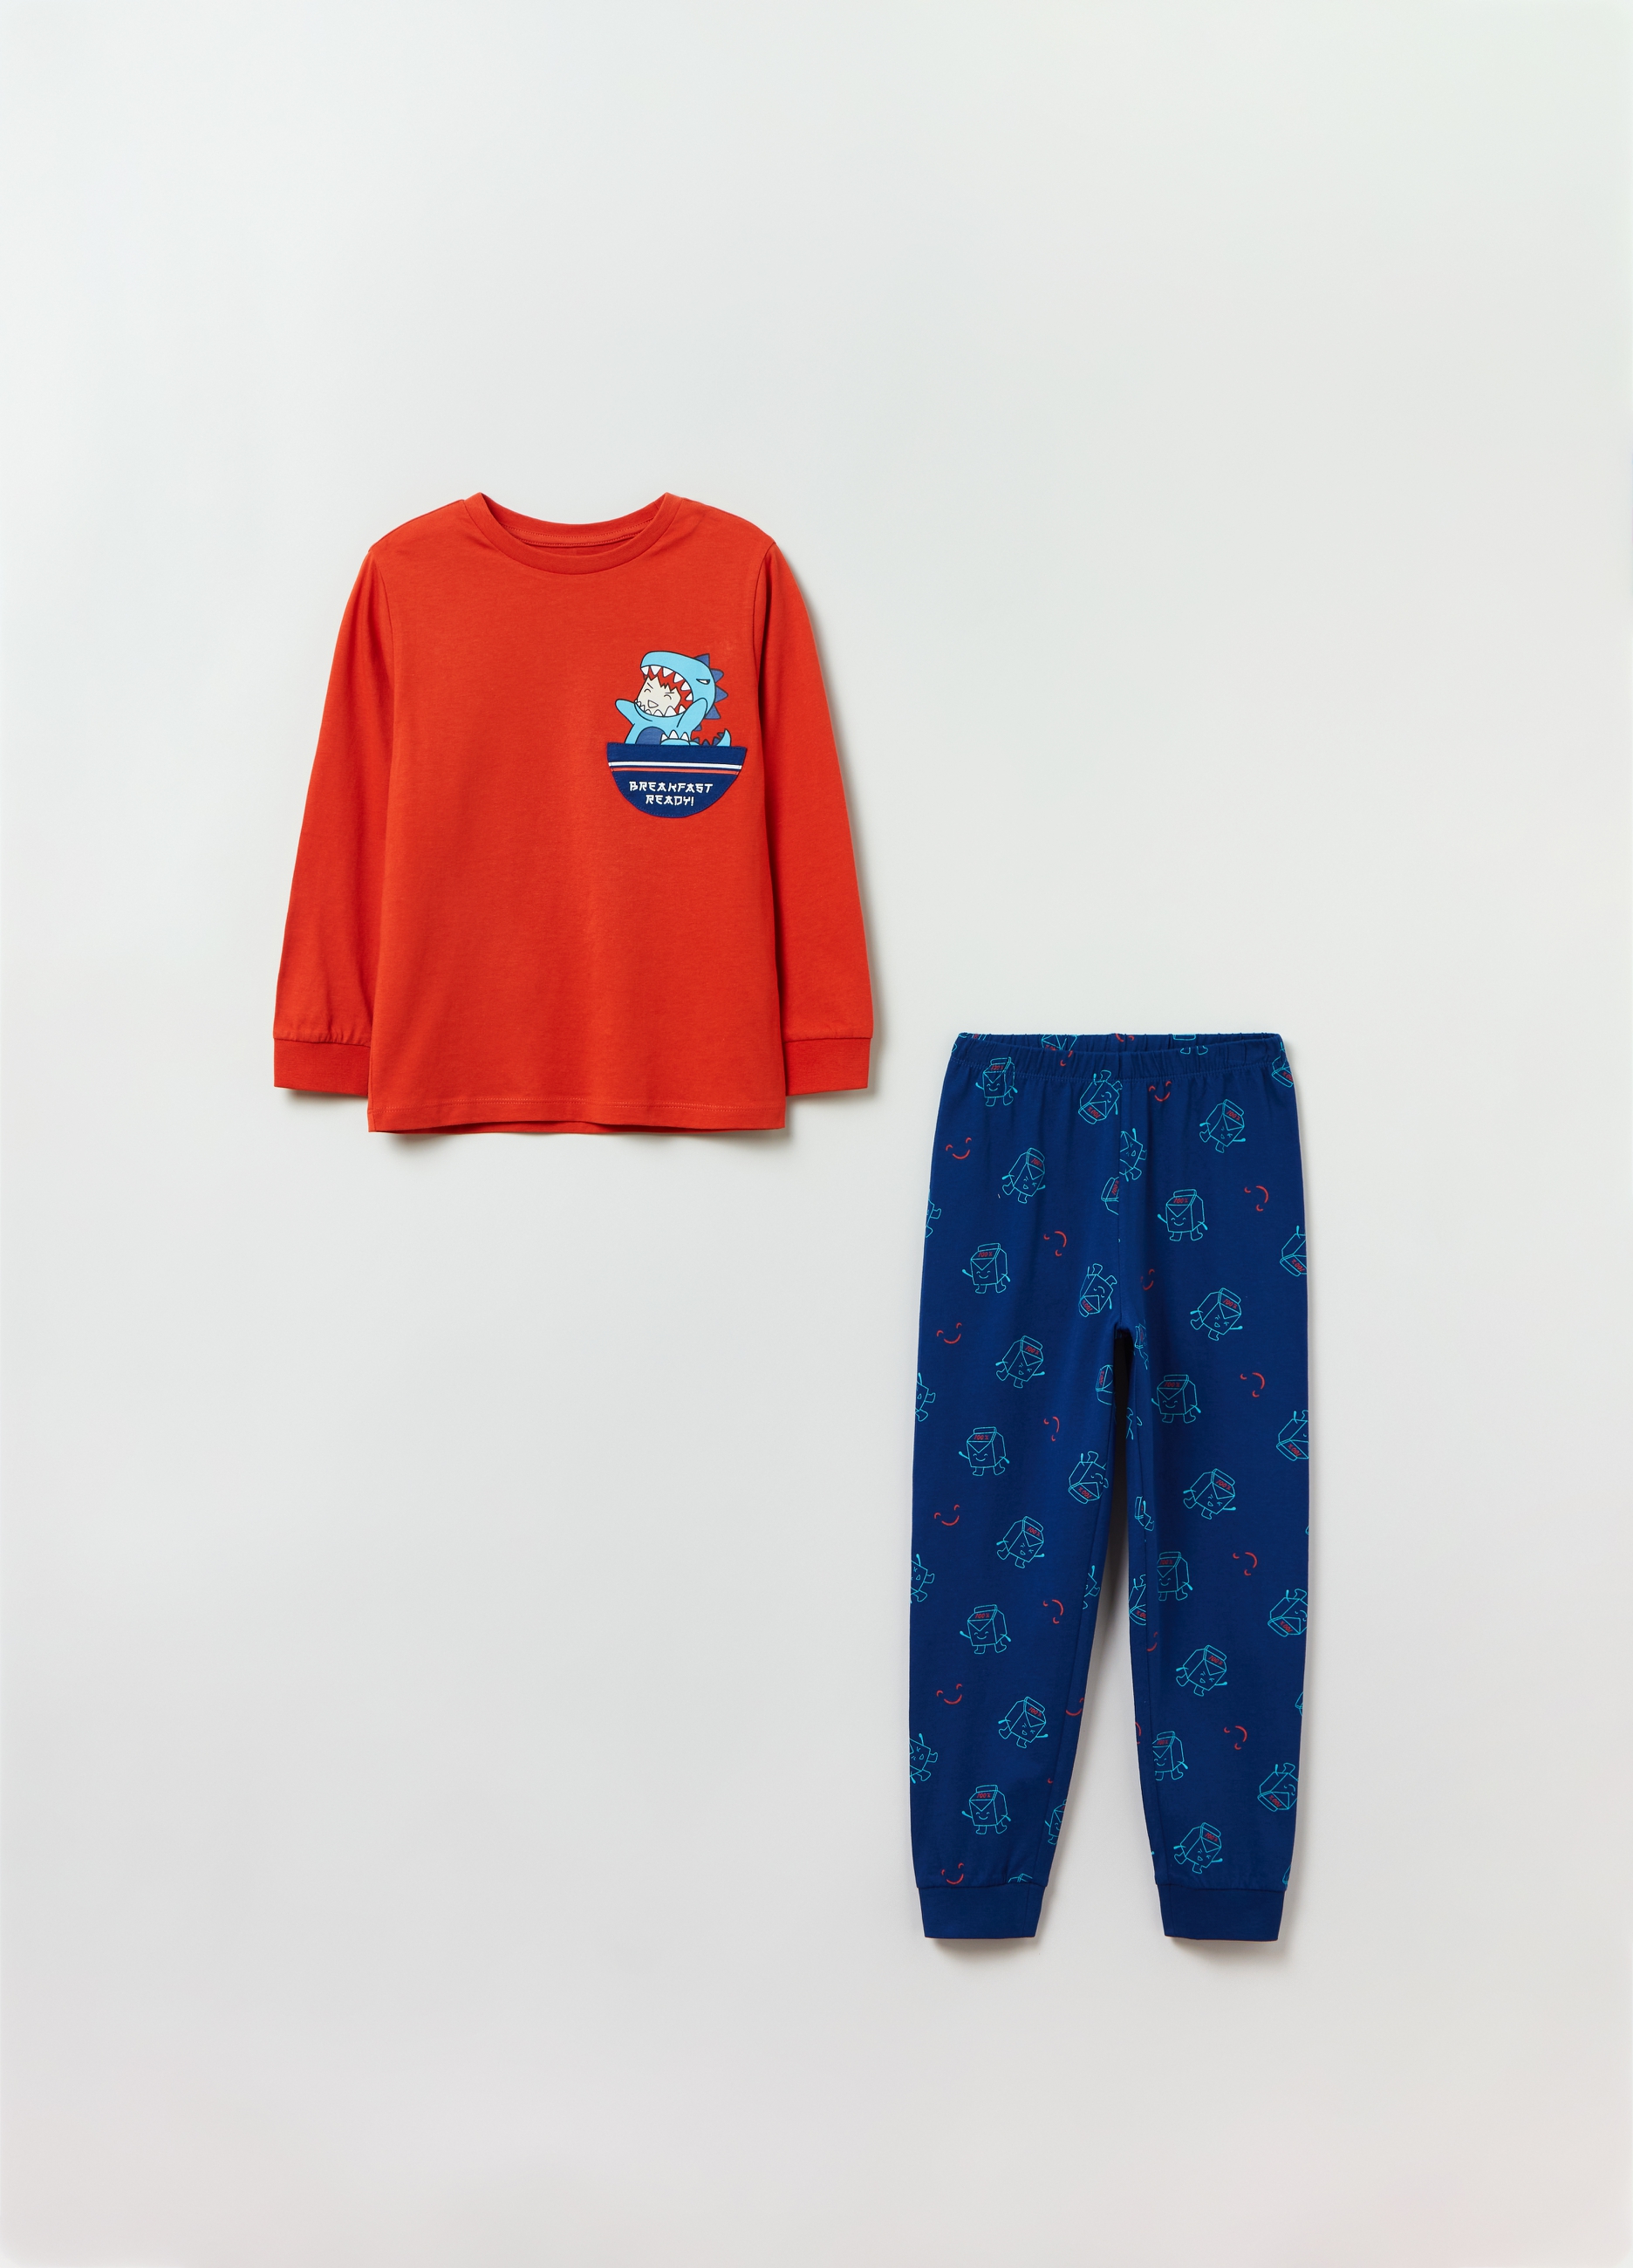 Пижама OVS для мальчиков, оранжевая, 3-4 лет, 1825693 star kidz пижама для мальчиков сонный мишка